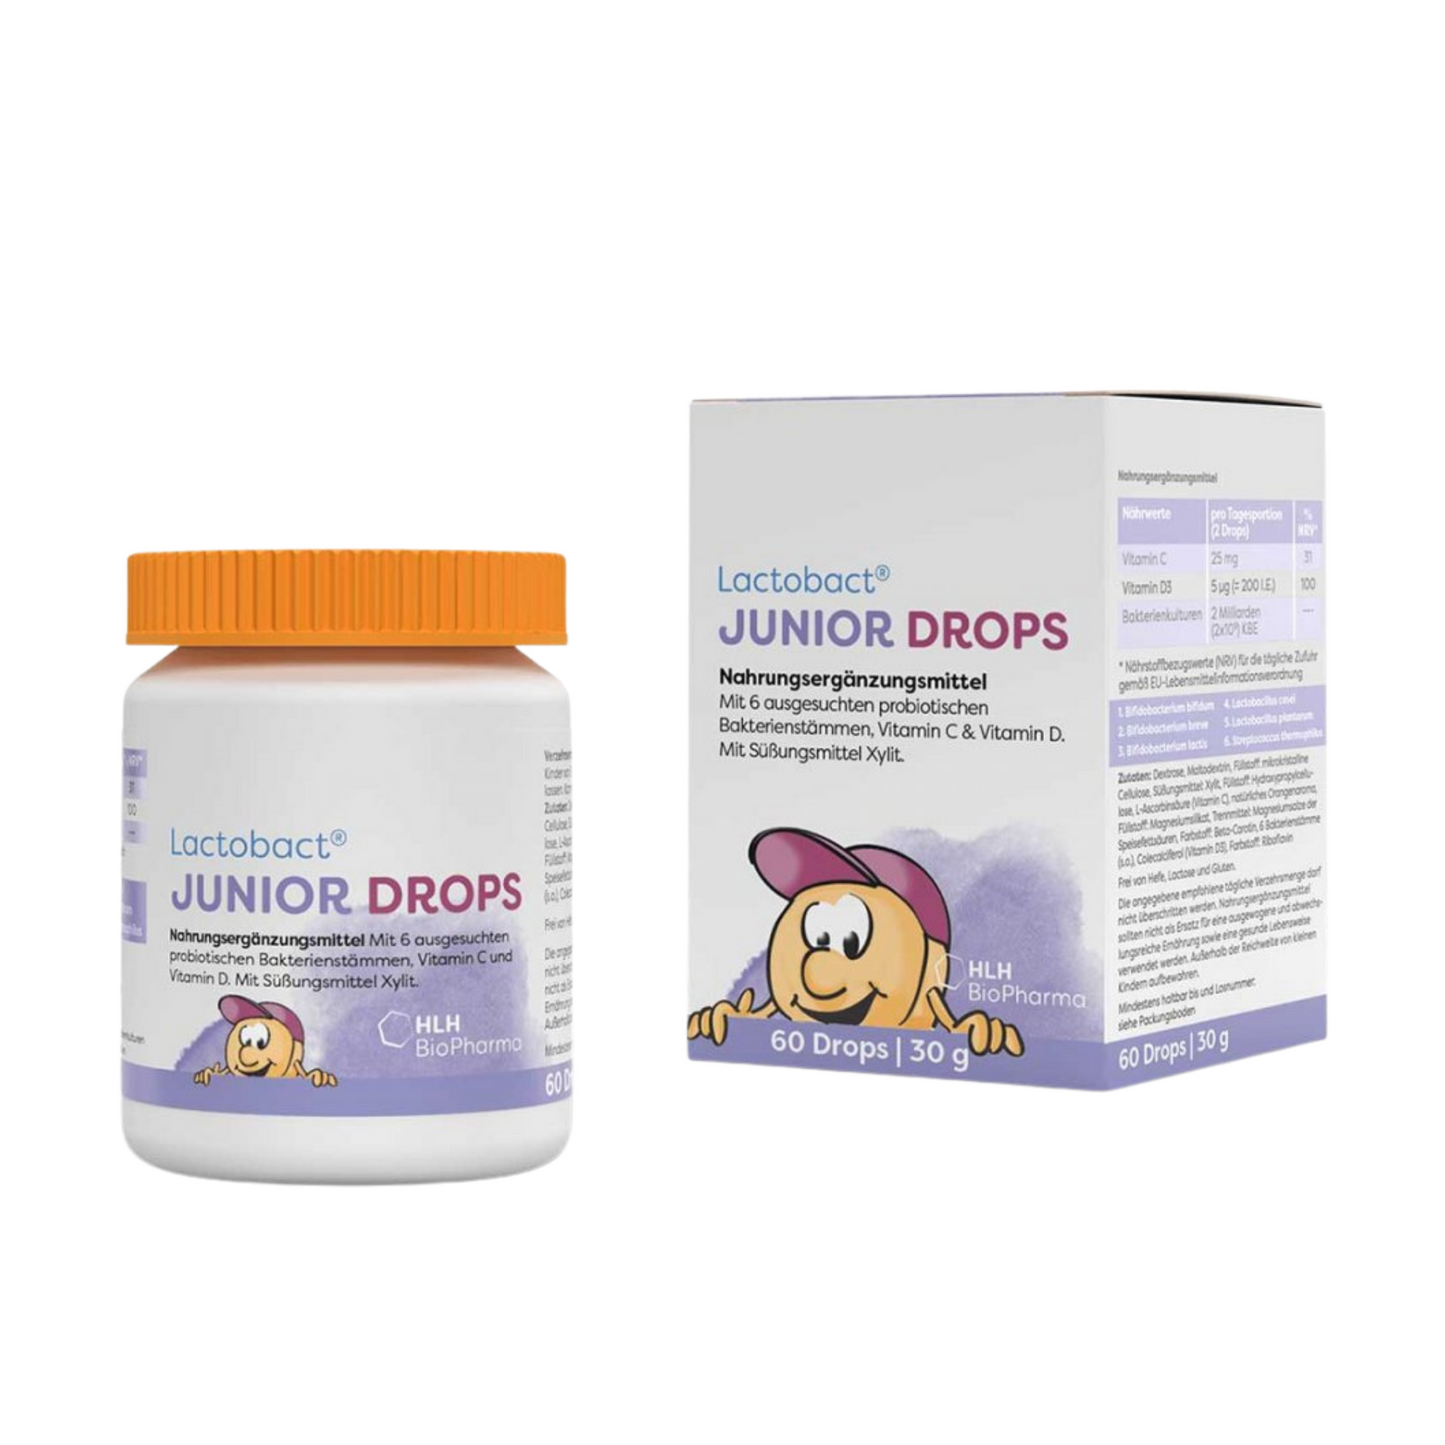 Lactobact® Junior Drops